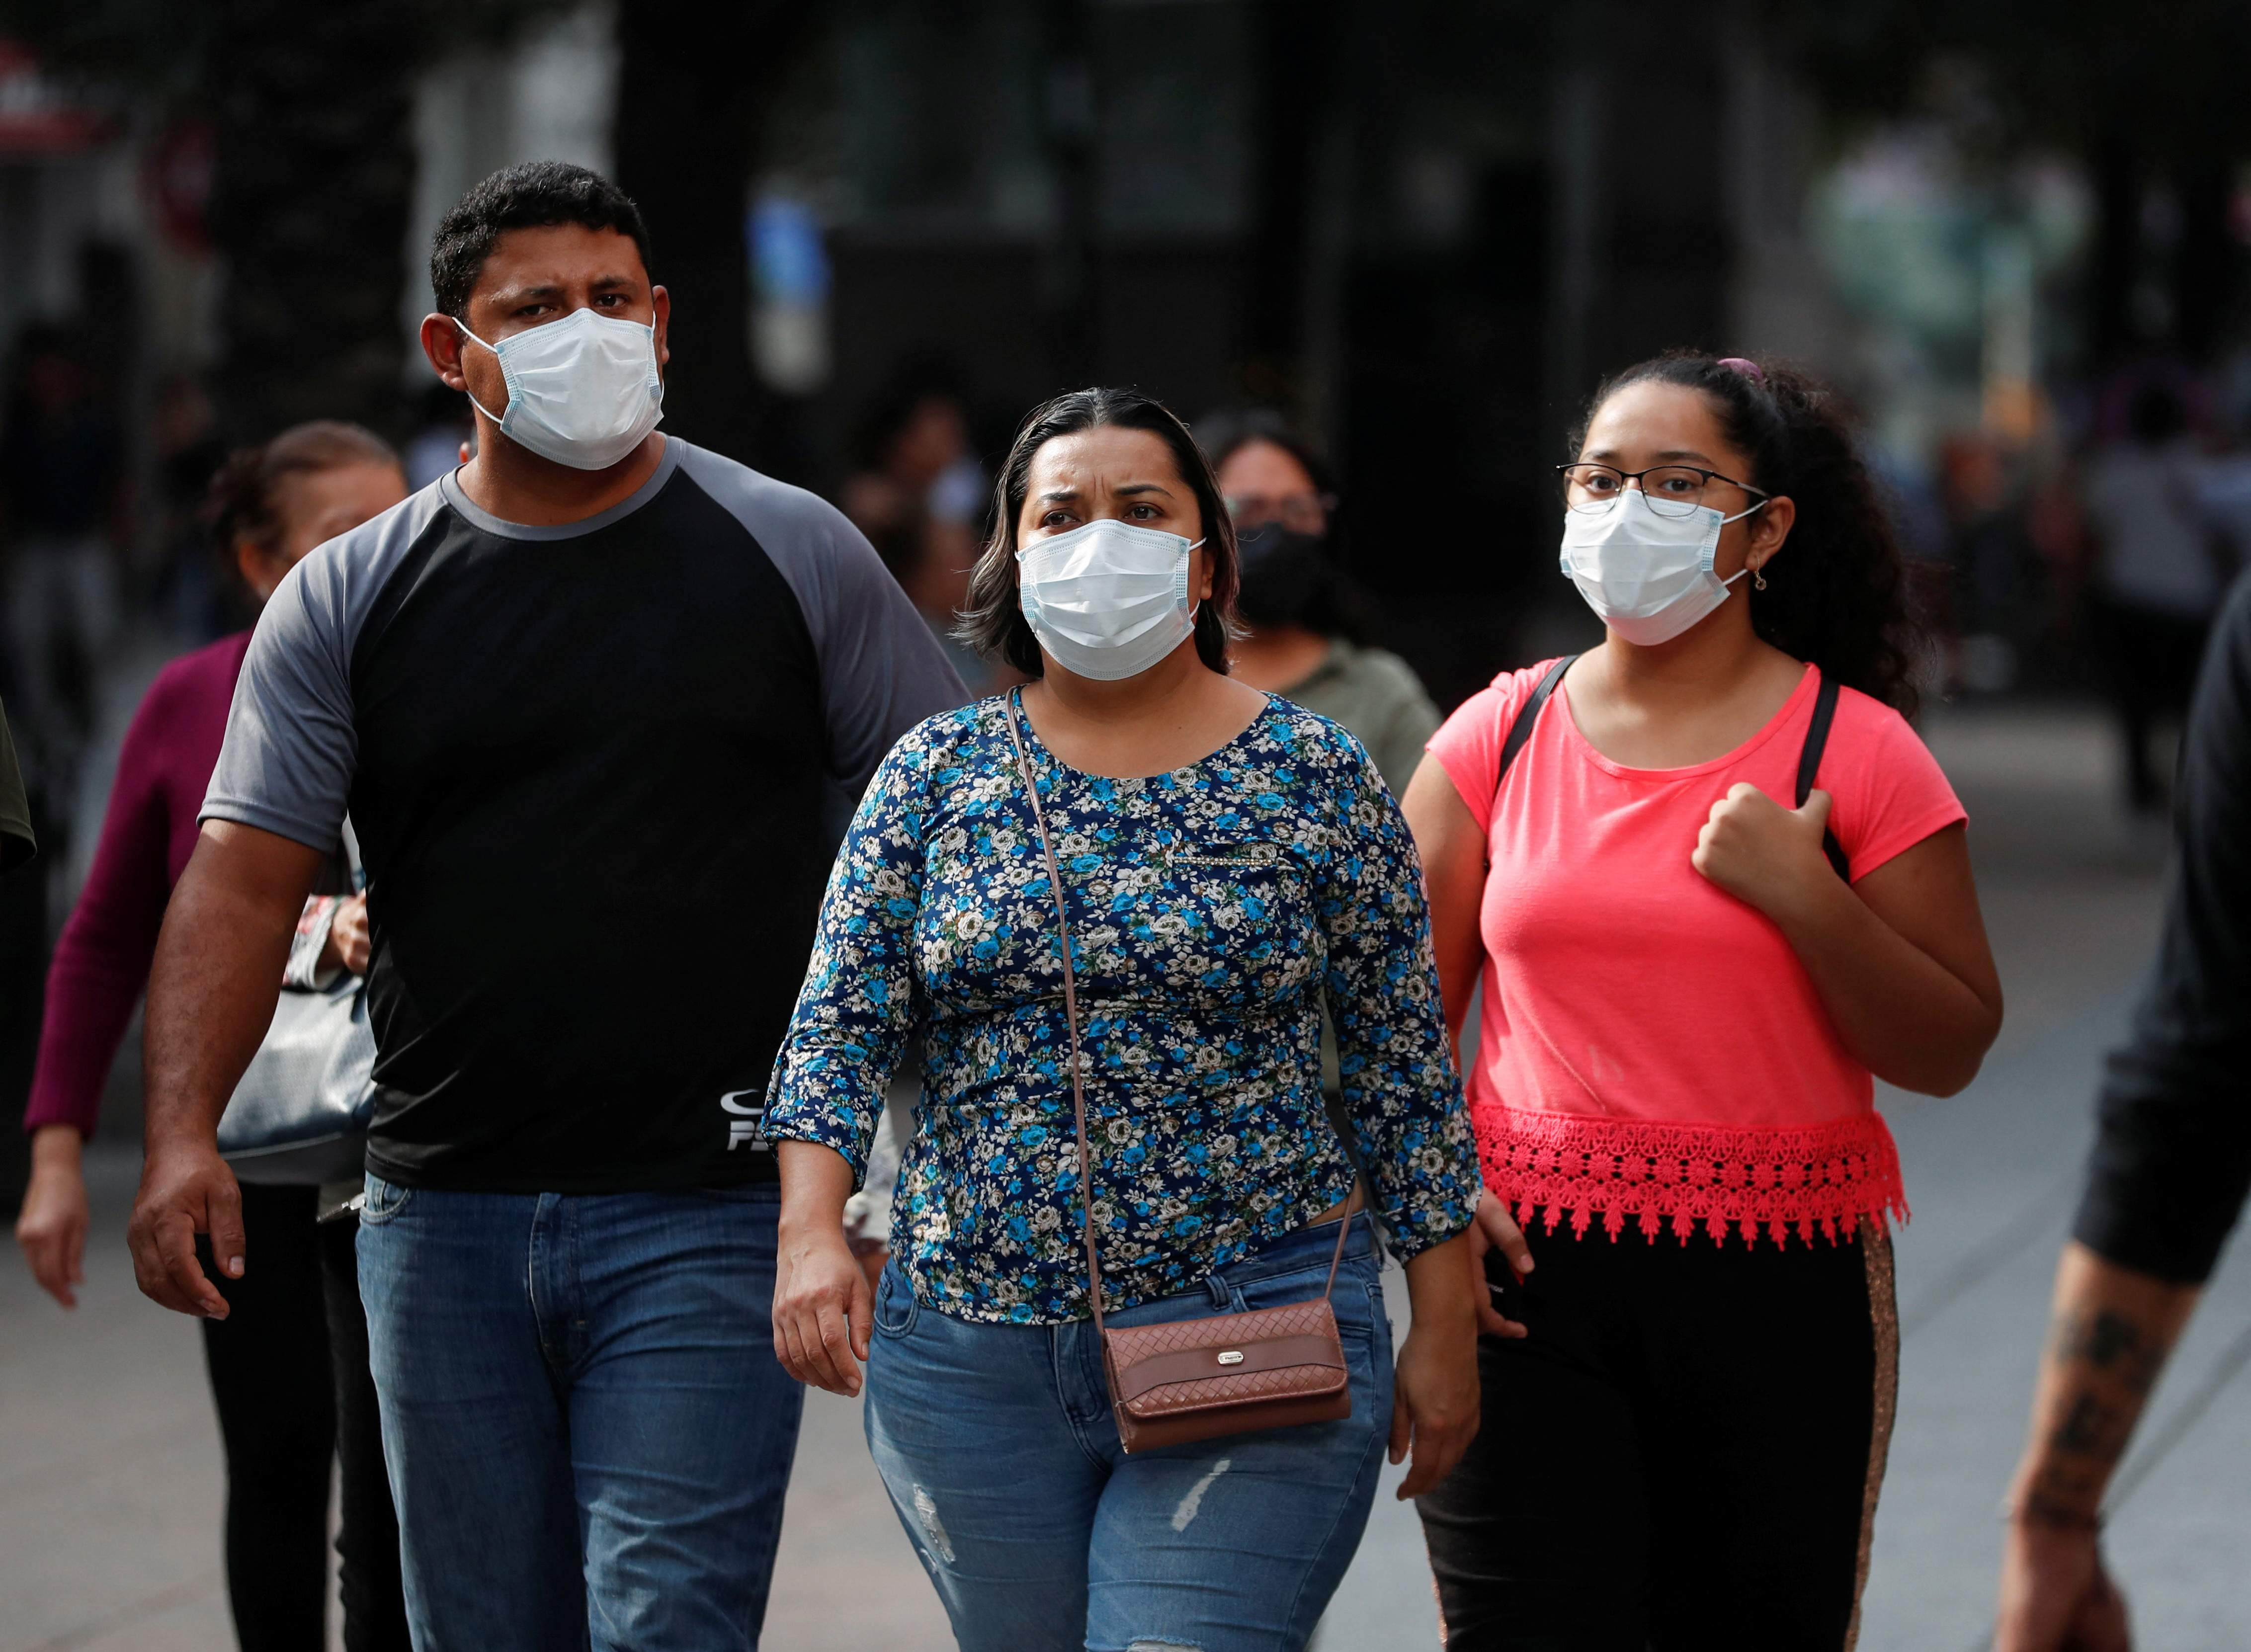 Du 17 au 19 décembre, 209 cas positifs de Covid-19 ont été signalés à Puebla (Photo : REUTERS/Daniel Becerril)